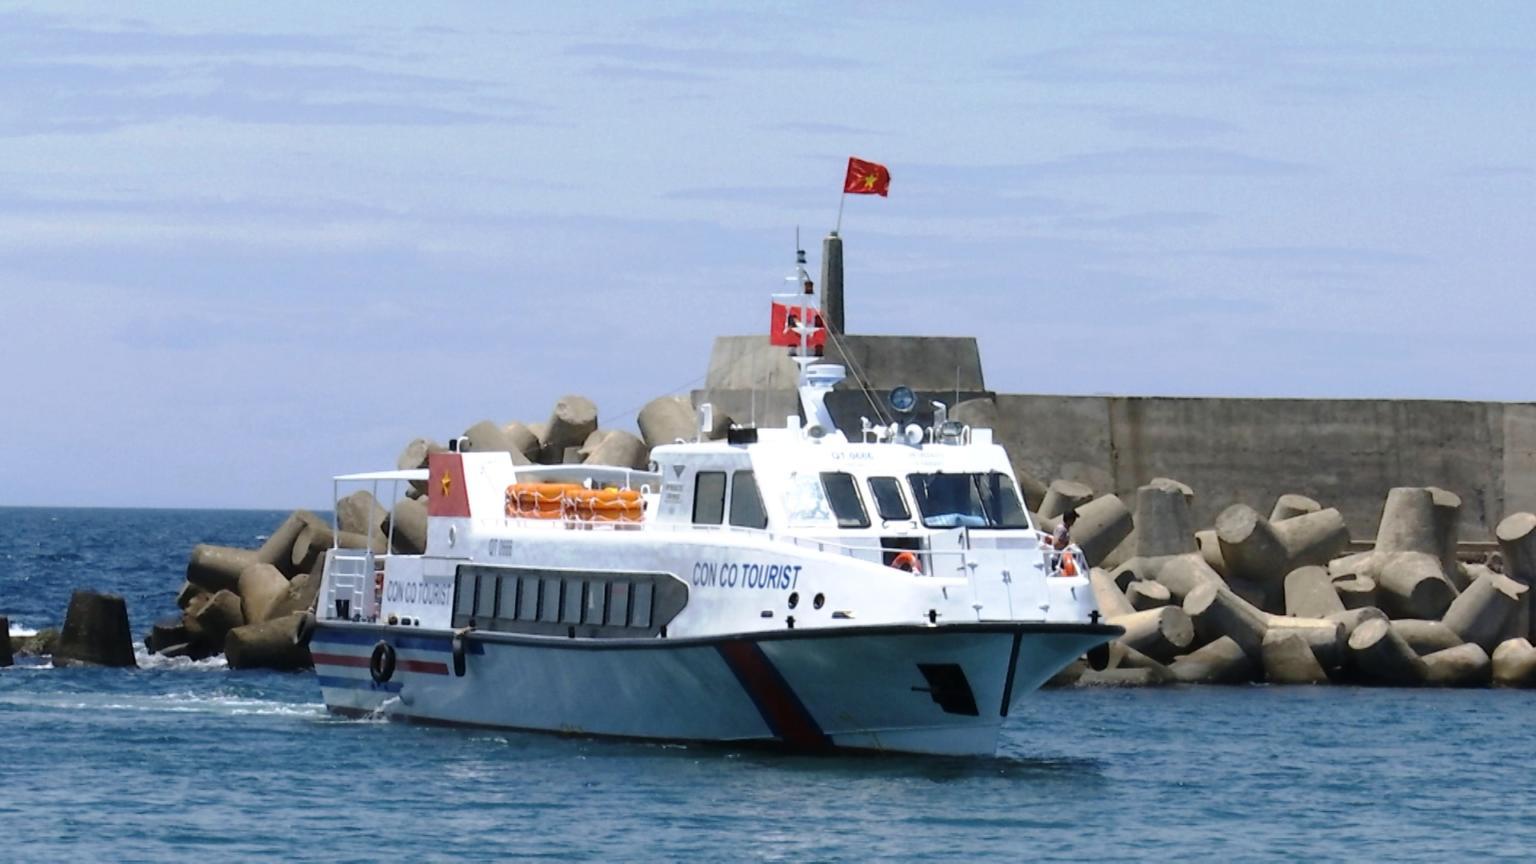 UBND tỉnh quyết định điều chuyển tàu ConCo Tourist từ UBND huyện sang Trung tâm DV&DL đảo Cồn Cỏ